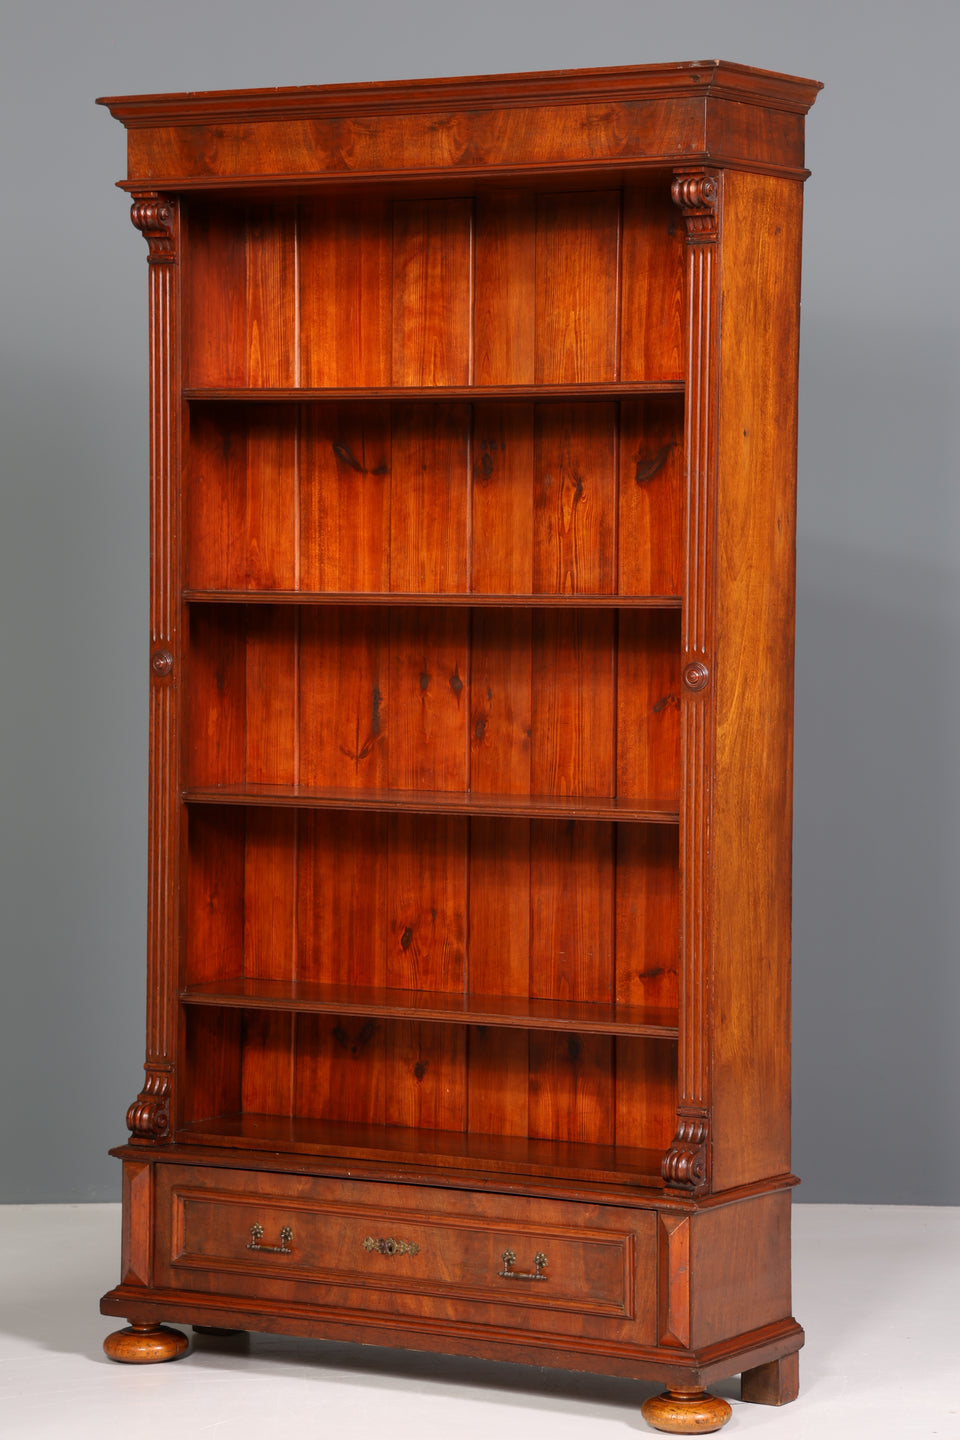 Traumhaftes Gründerzeit Bücherregal Jugendstil Regal um 1890 Antik Buchablage Bookshelf